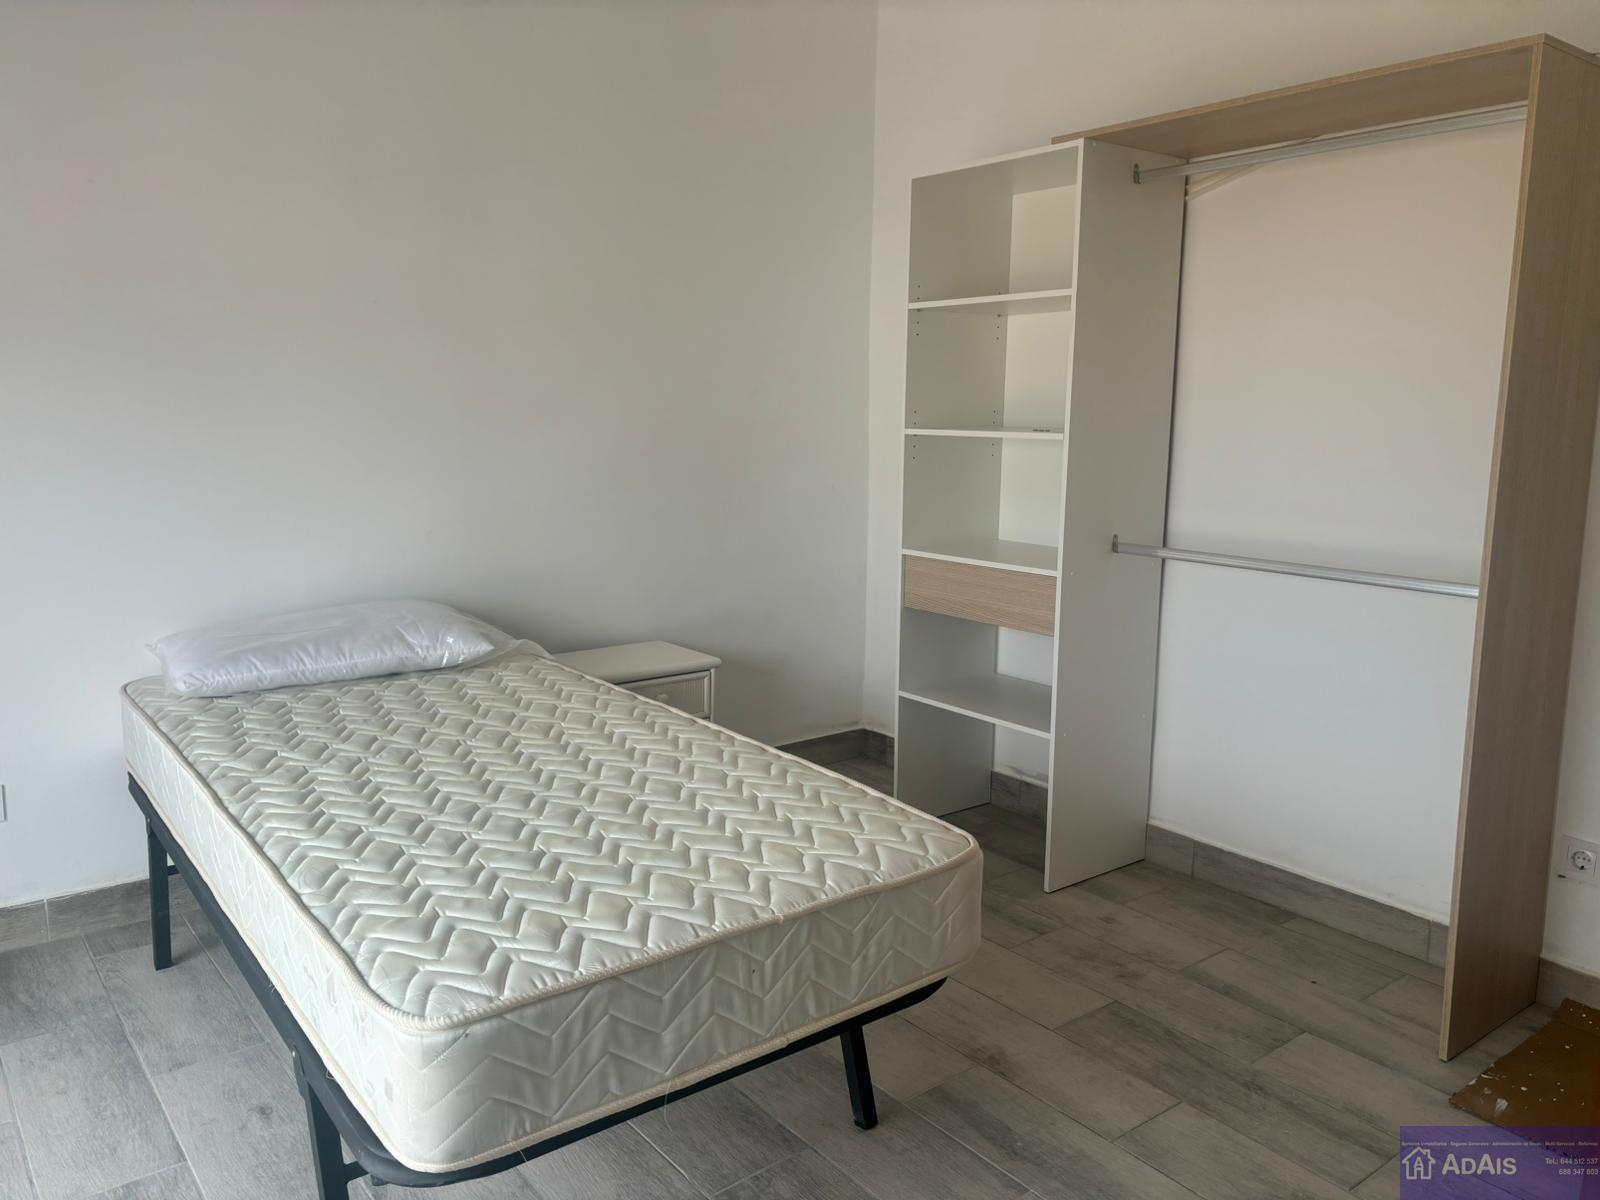 For rent of room in Alqueria de la Comtessa l